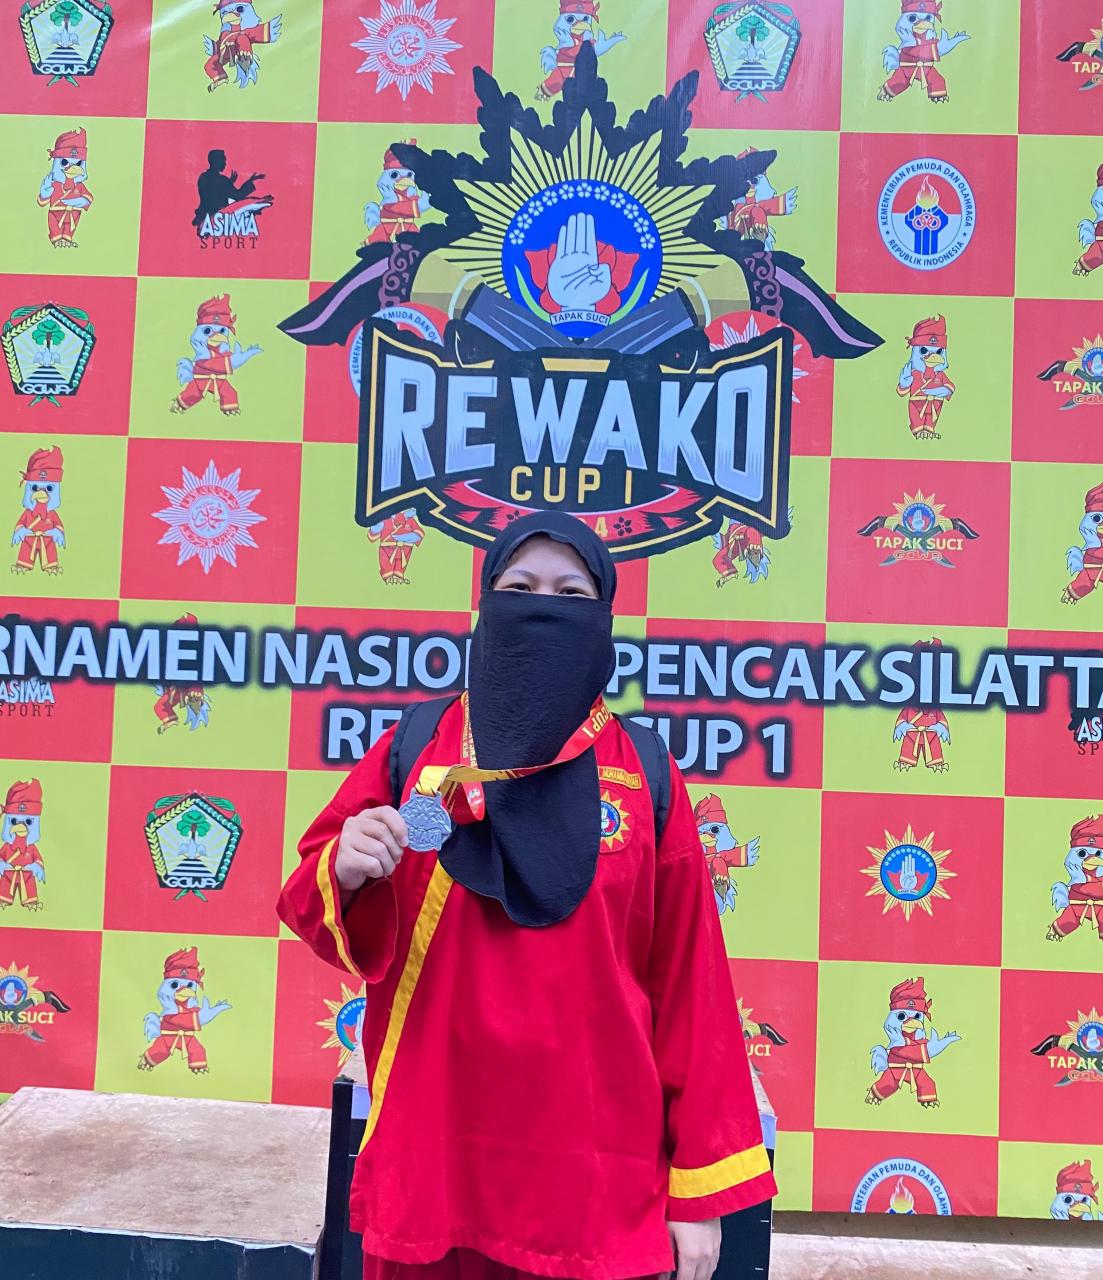 Mahasiswi BSA FAH Sabet Juara 2 Pencak Silat Tapak Suci Rewako Cup 1